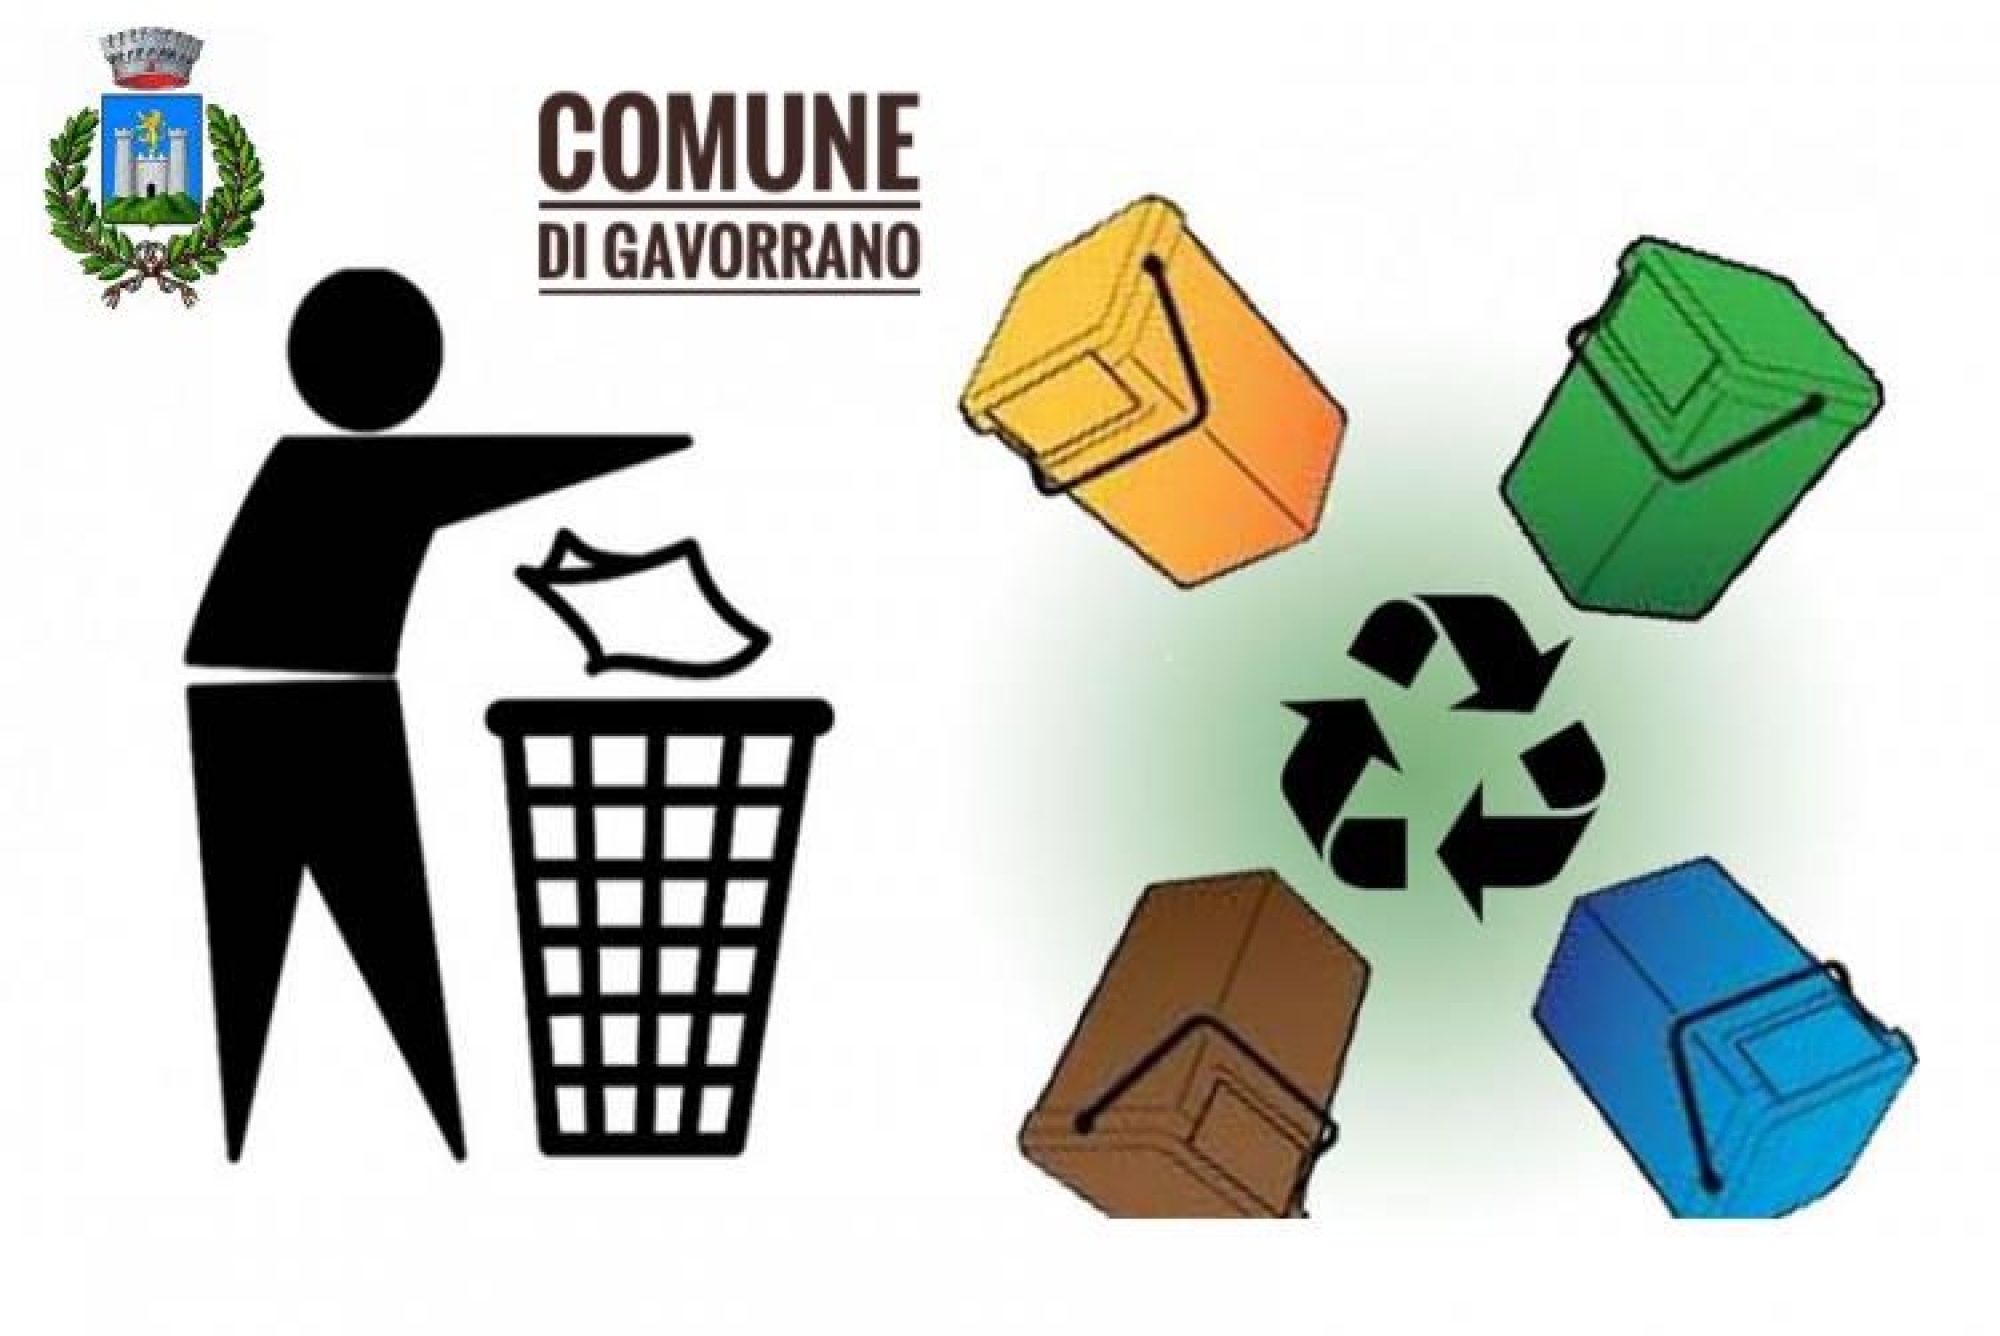 Servizio di igiene urbana - disposizioni urgenti per la minimizzazione dei rifiuti